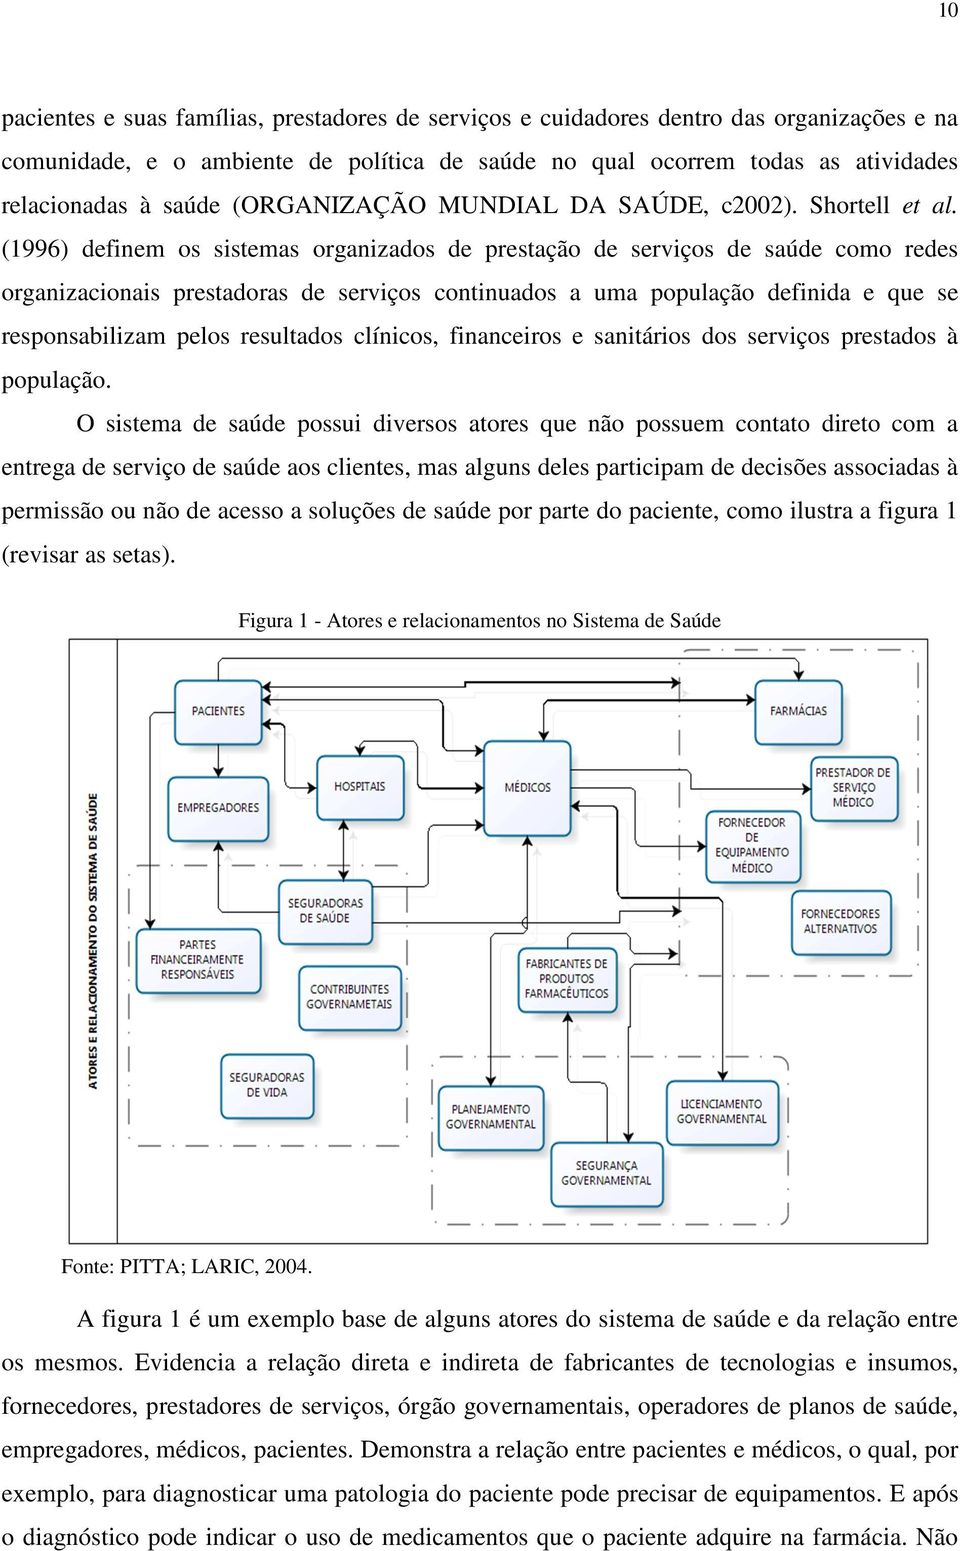 (1996) definem os sistemas organizados de prestação de serviços de saúde como redes organizacionais prestadoras de serviços continuados a uma população definida e que se responsabilizam pelos